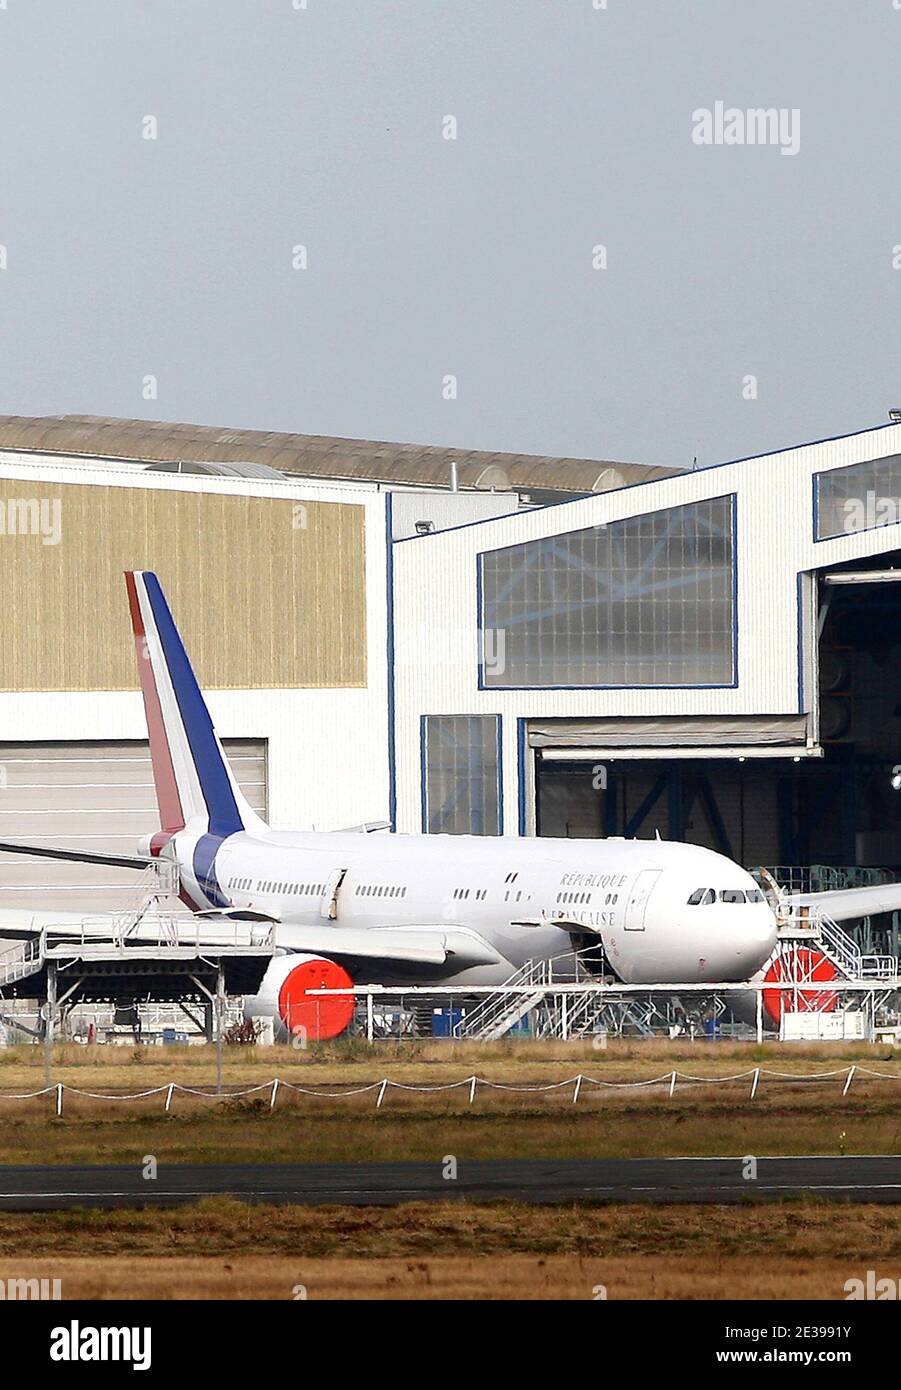 Exclusif. Le nouvel avion présidentiel français, un Airbus A330-200, est  prêt à voler avec des couleurs nationales françaises sur son corps et à  rester à l'aéroport de Mérignac, près de Bordeaux, France,